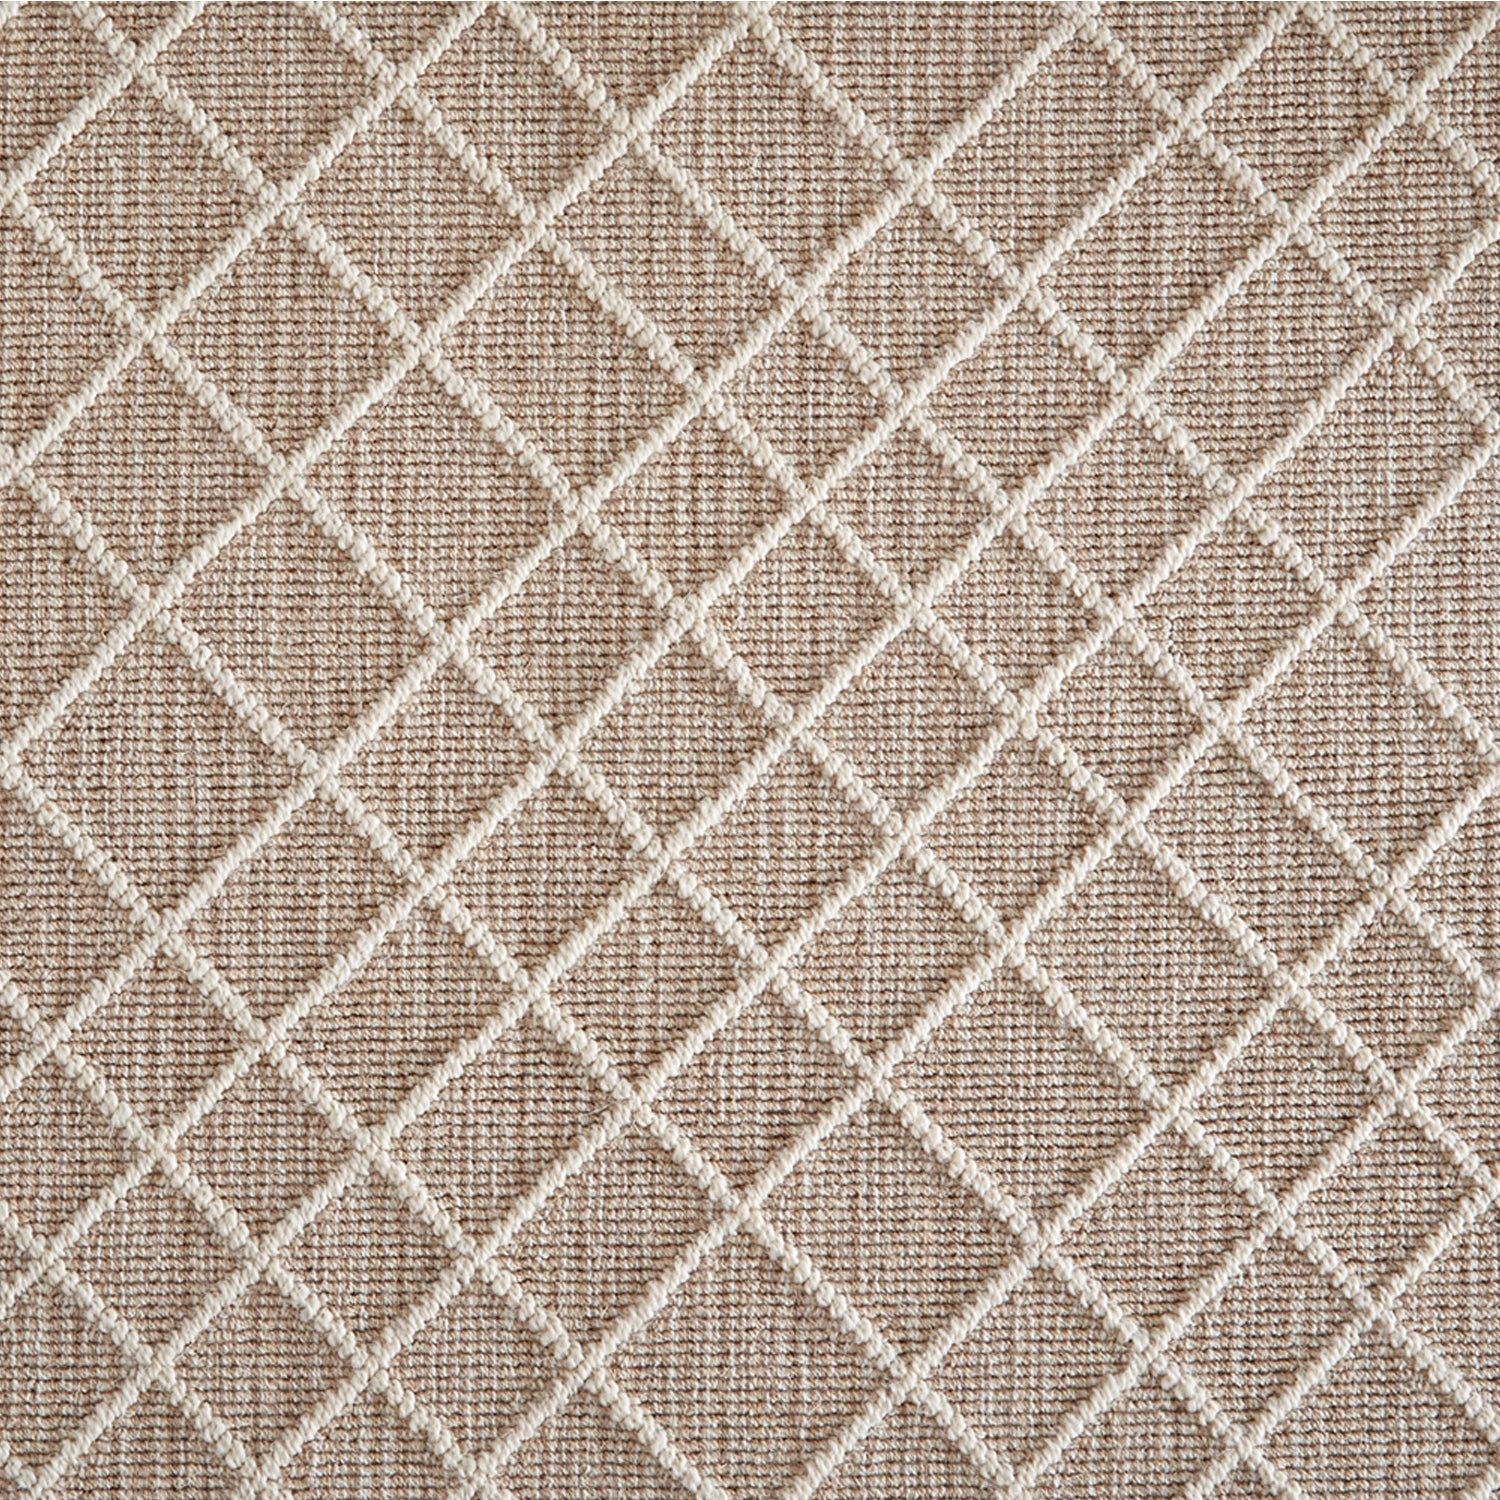 Wool-blend broadloom carpet swatch in a dimensional lattice print in cream on a mottled tan field.